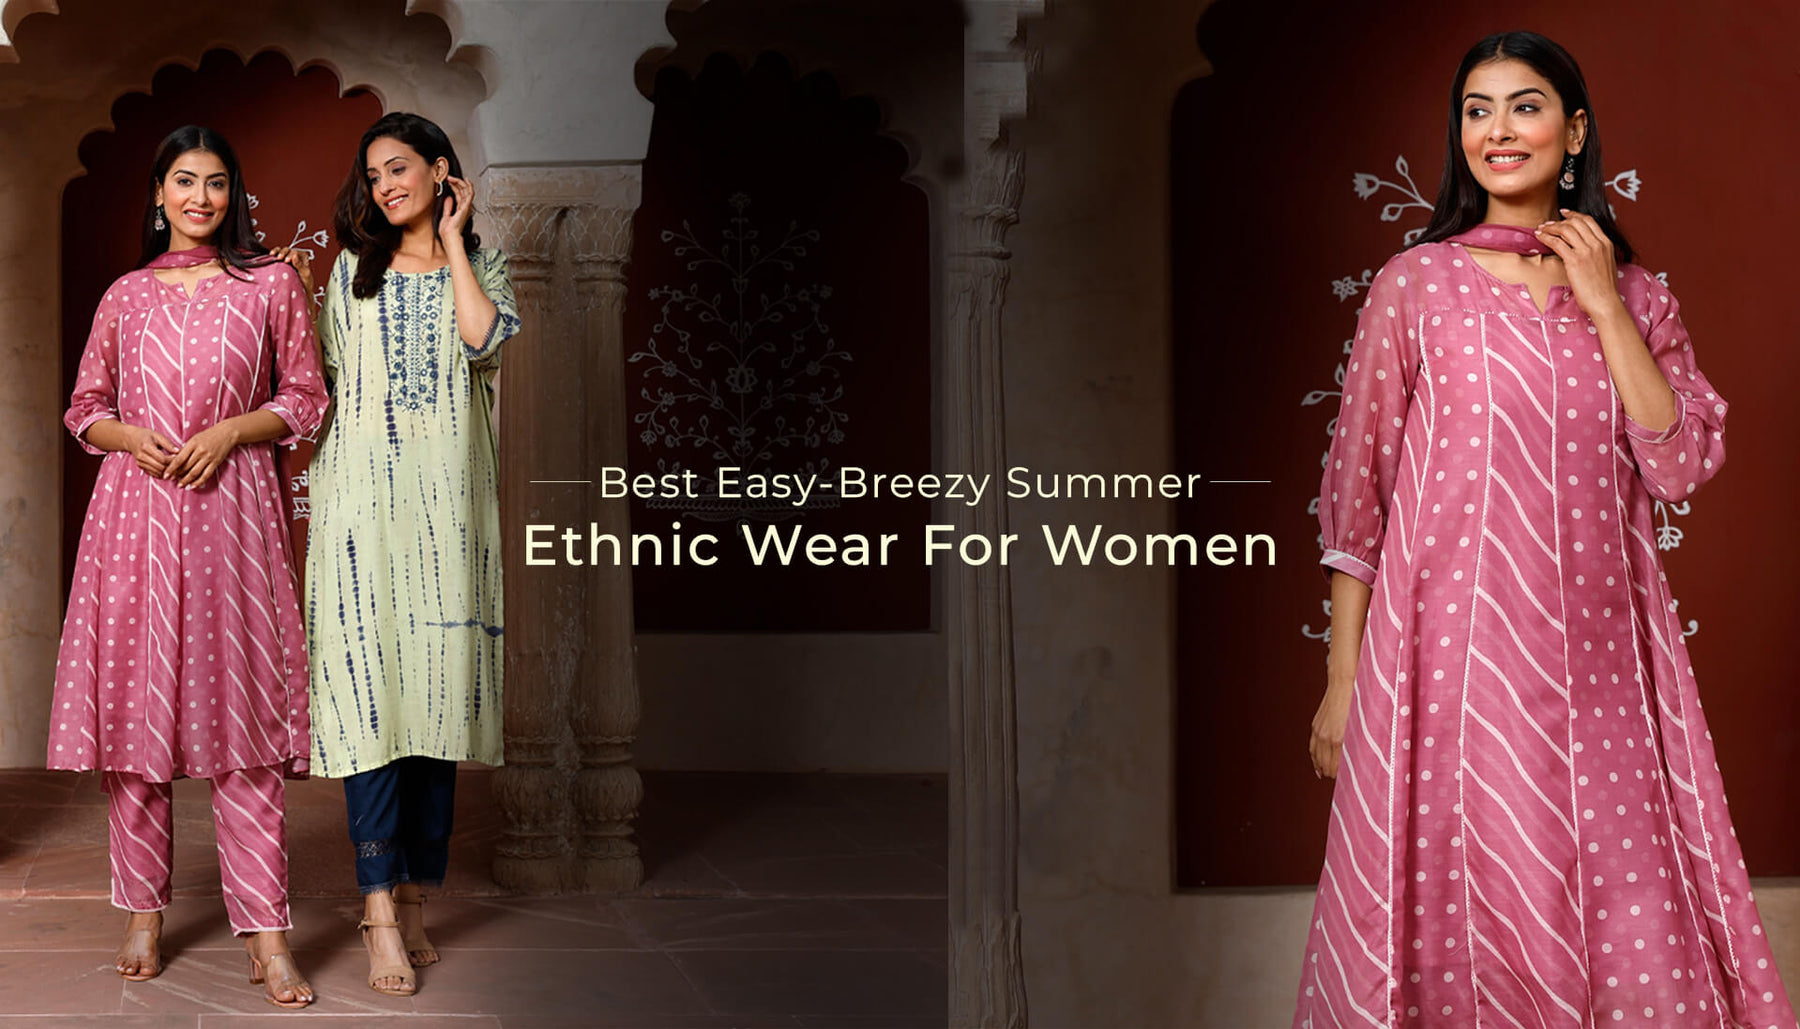 Best Easy-Breezy Summer Ethnic Wear For Women